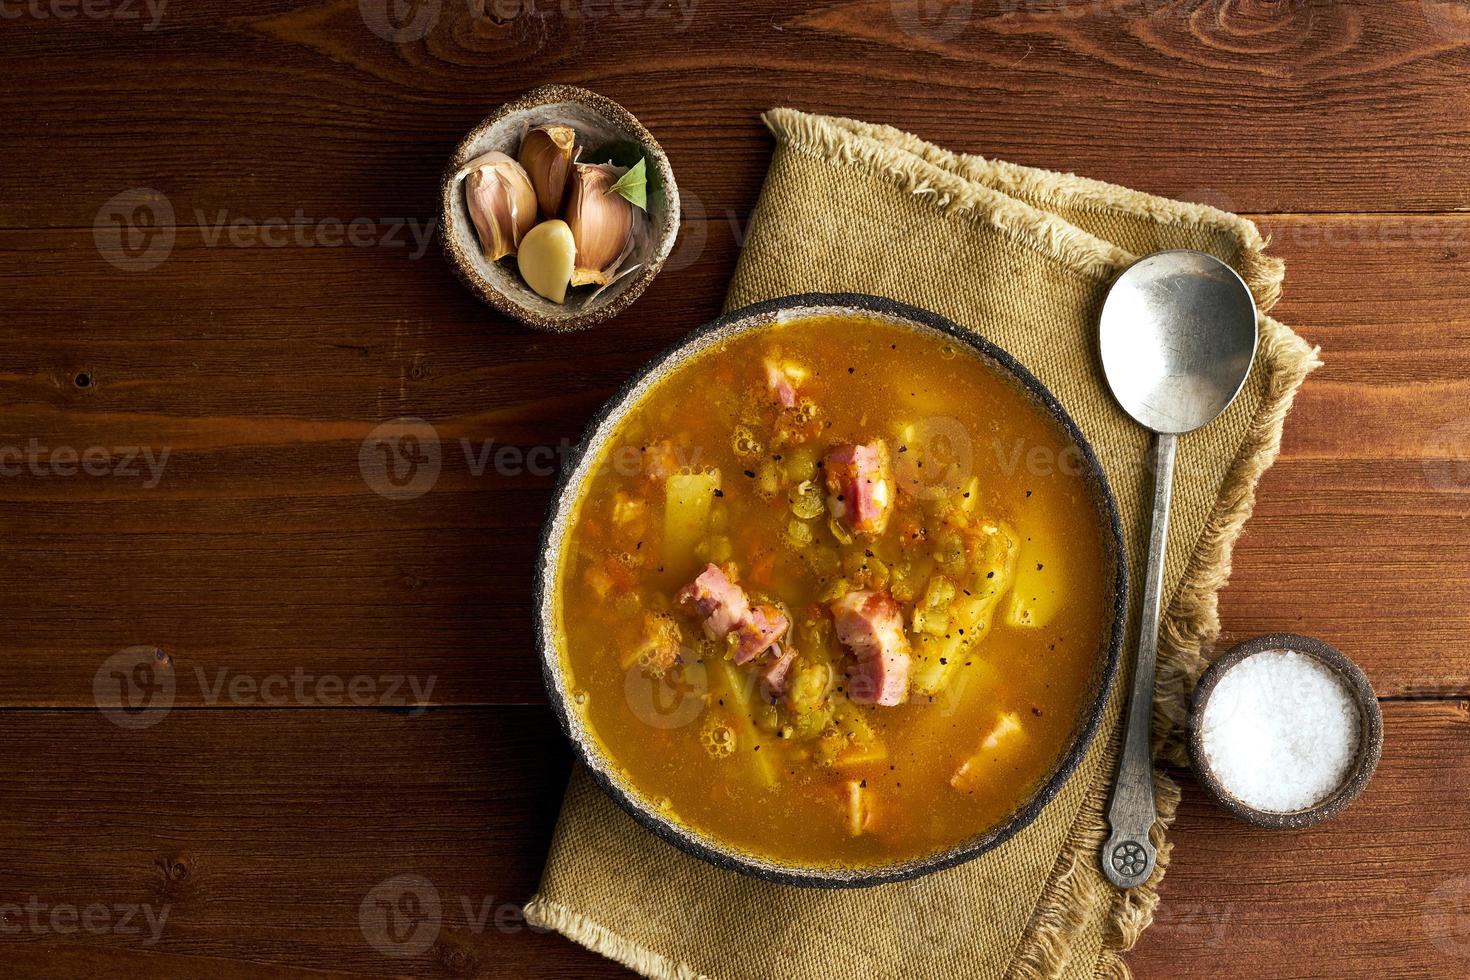 warme wintersoep met gehakte groene erwten, varkensvlees, spek, gerookt op donkerbruine houten tafel. heerlijke smakelijke vetrijke soep. foto